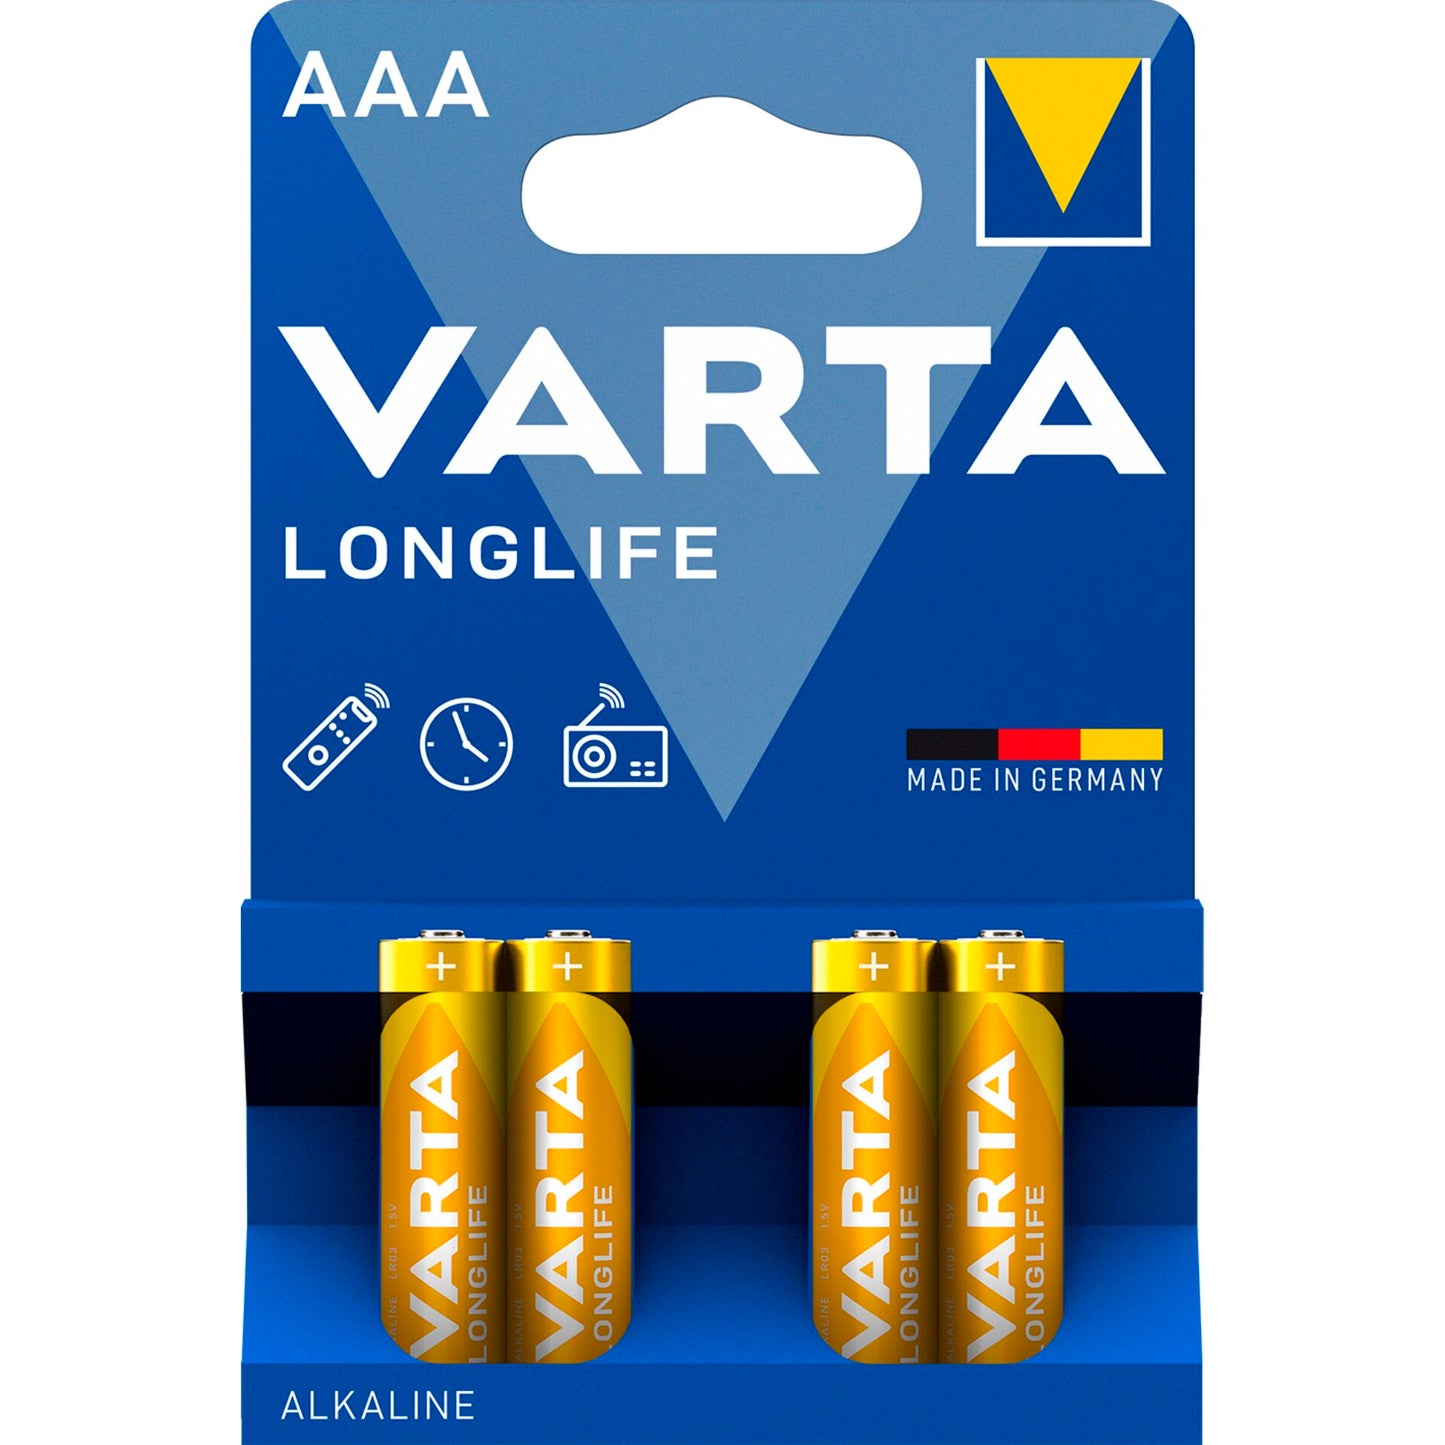 Varta 1x4 AAA 1.5V Longlife Alkaline Batteries